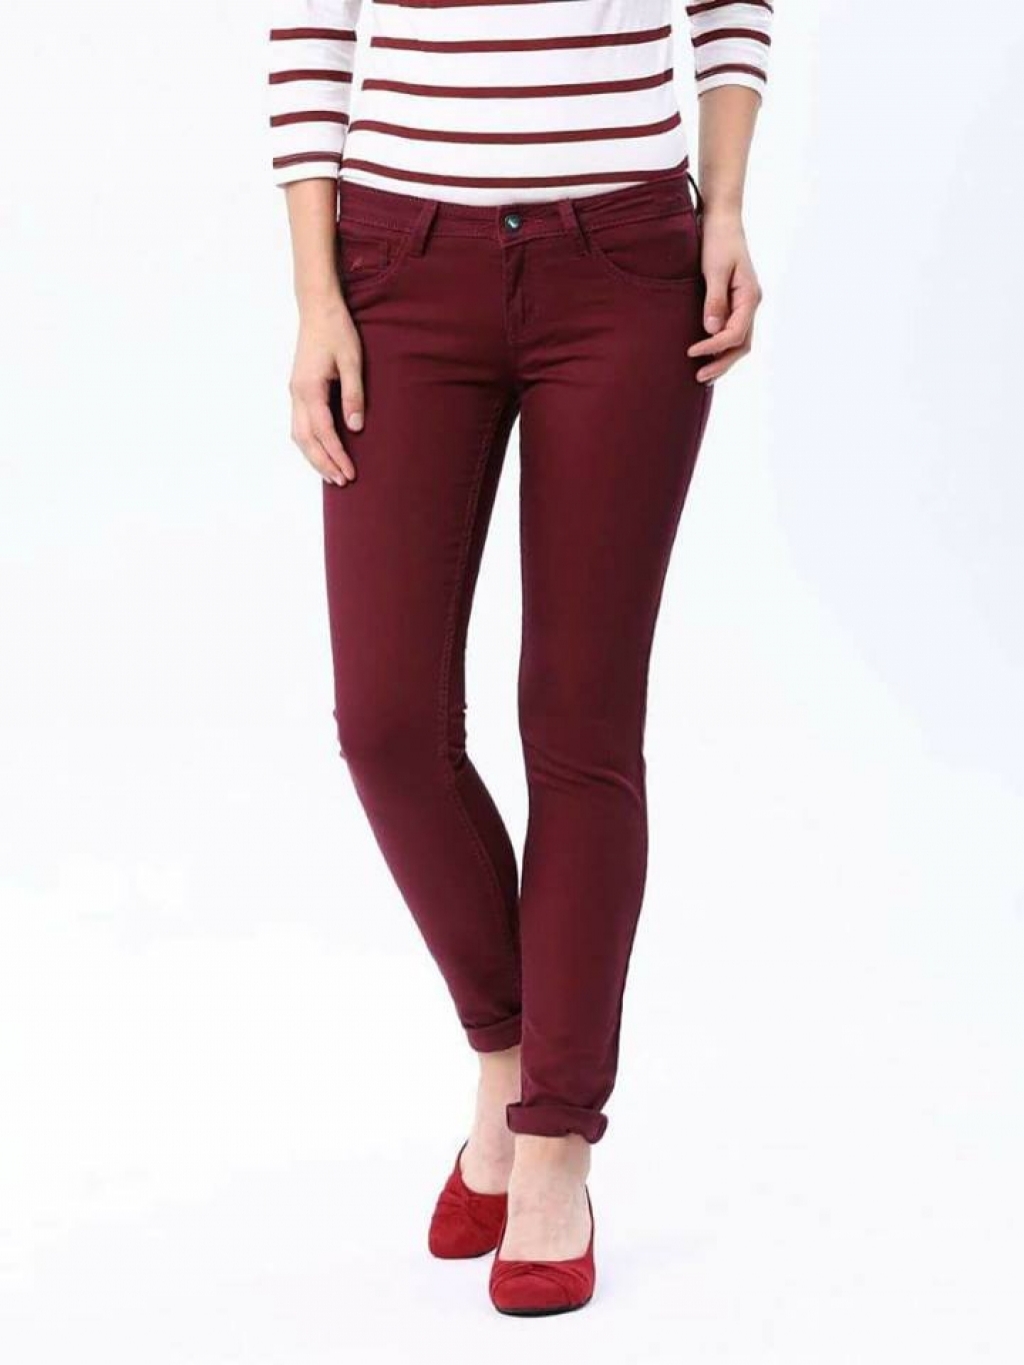 Buy Denim skinny jeans in Pakistan | online shopping in Pakistan